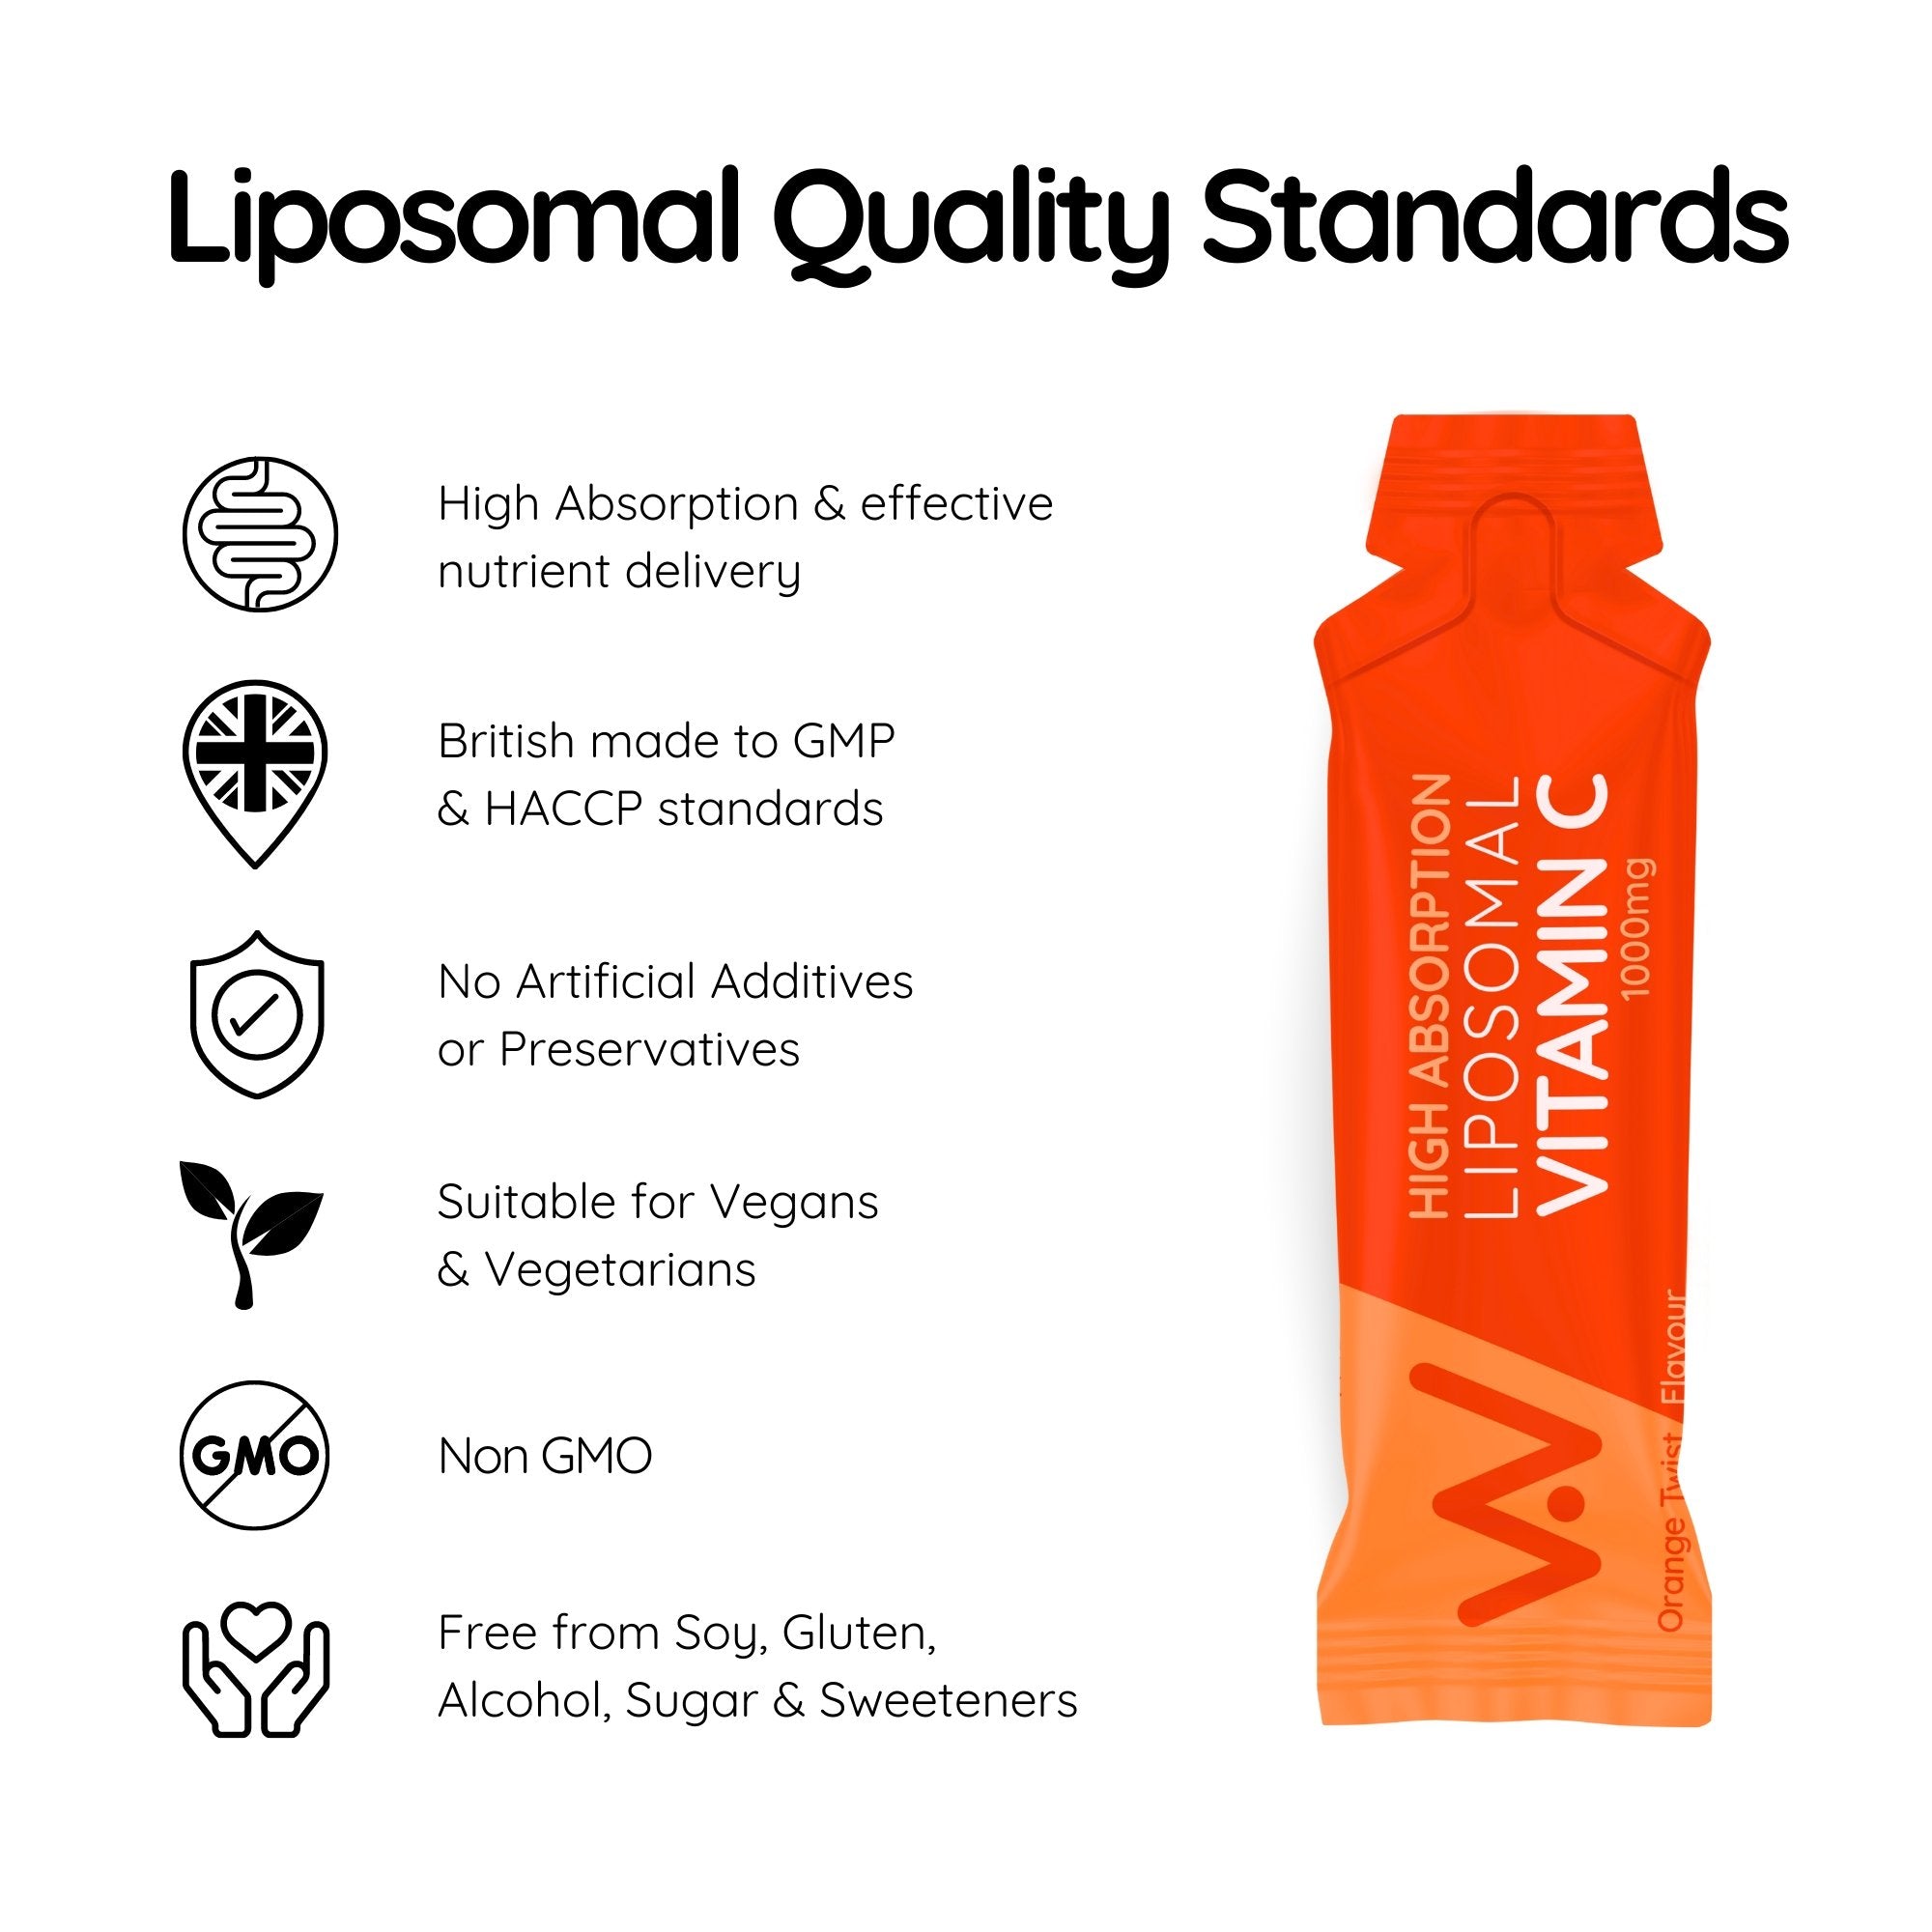 NEW Liposomal Vitamin C Sachets - 1000mg - 30 Pack - Orange Twist Flavour